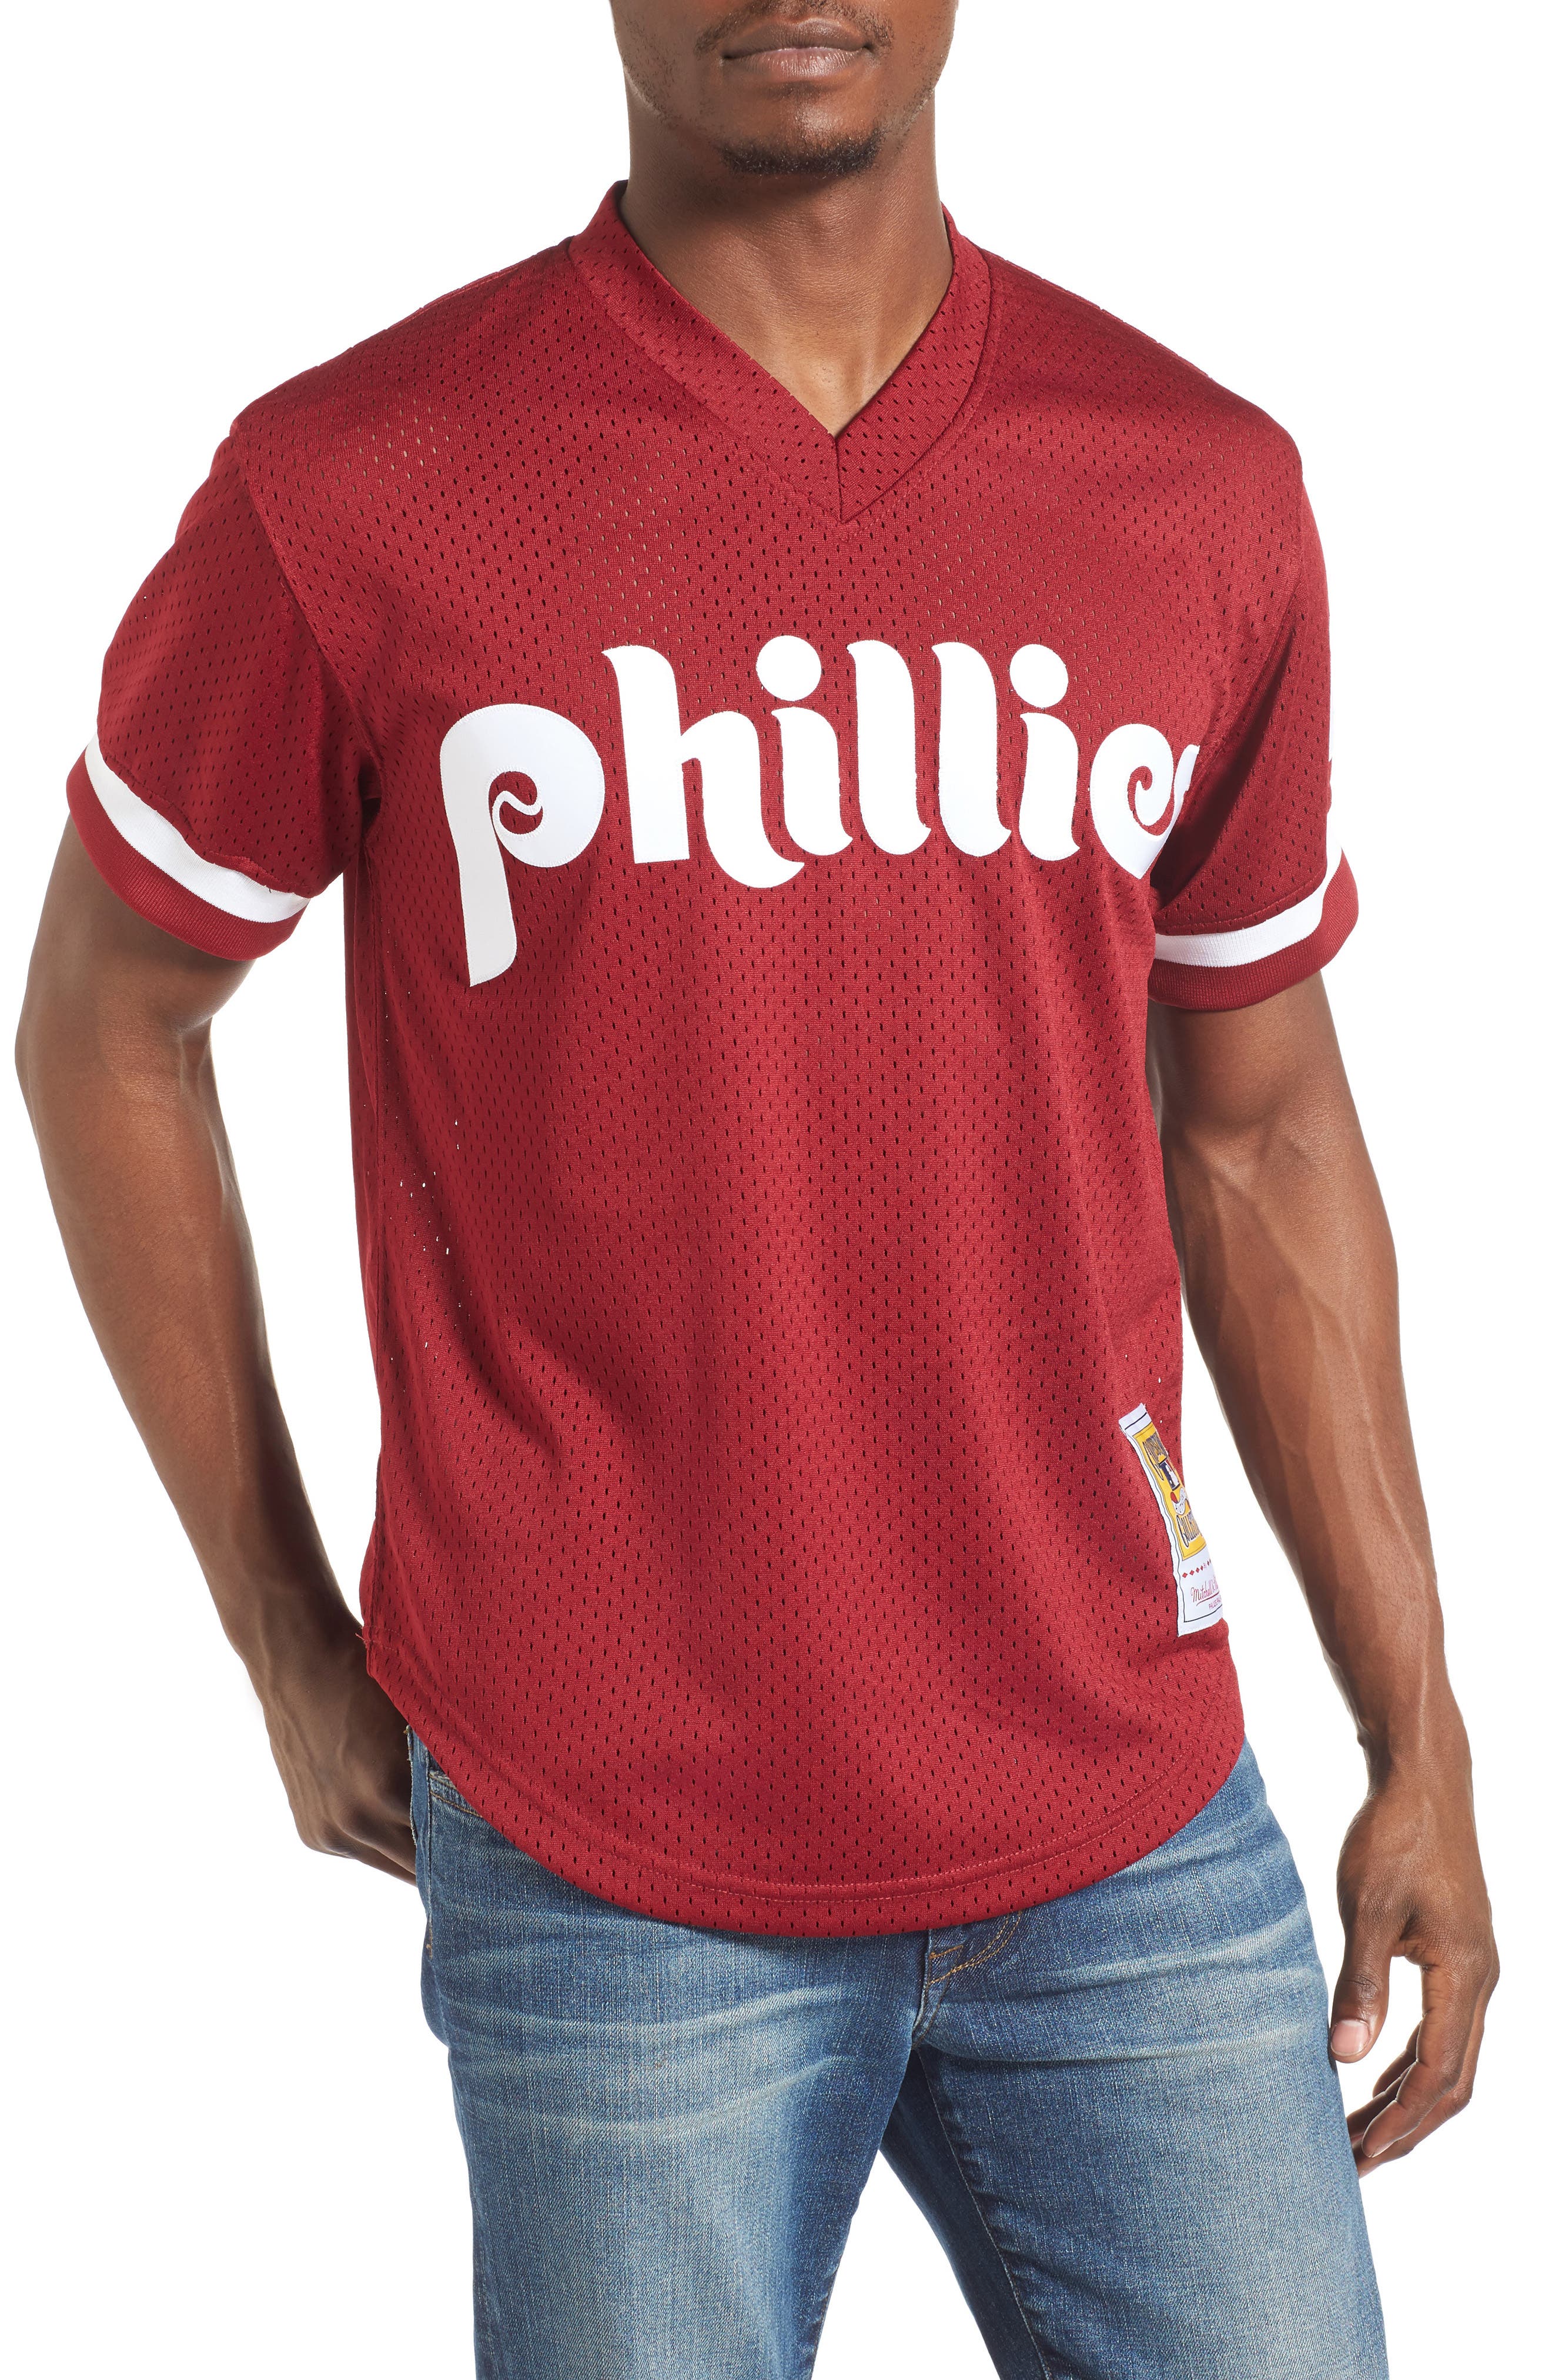 phillies batting practice jersey